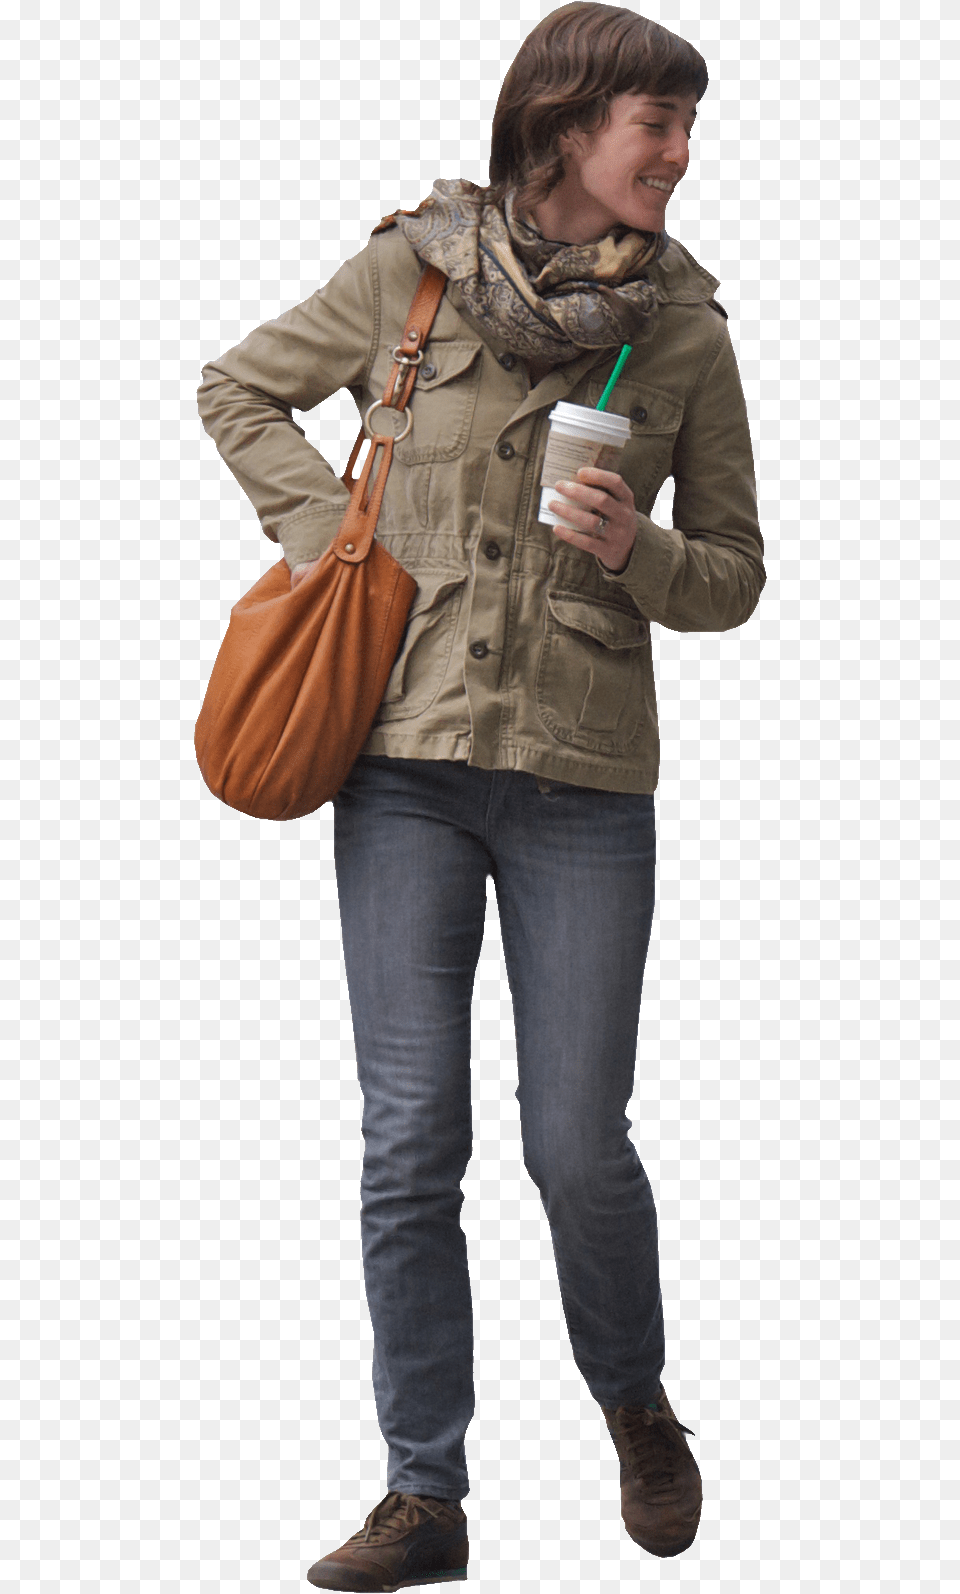 Person Walking Towards, Accessories, Handbag, Pants, Jacket Png Image